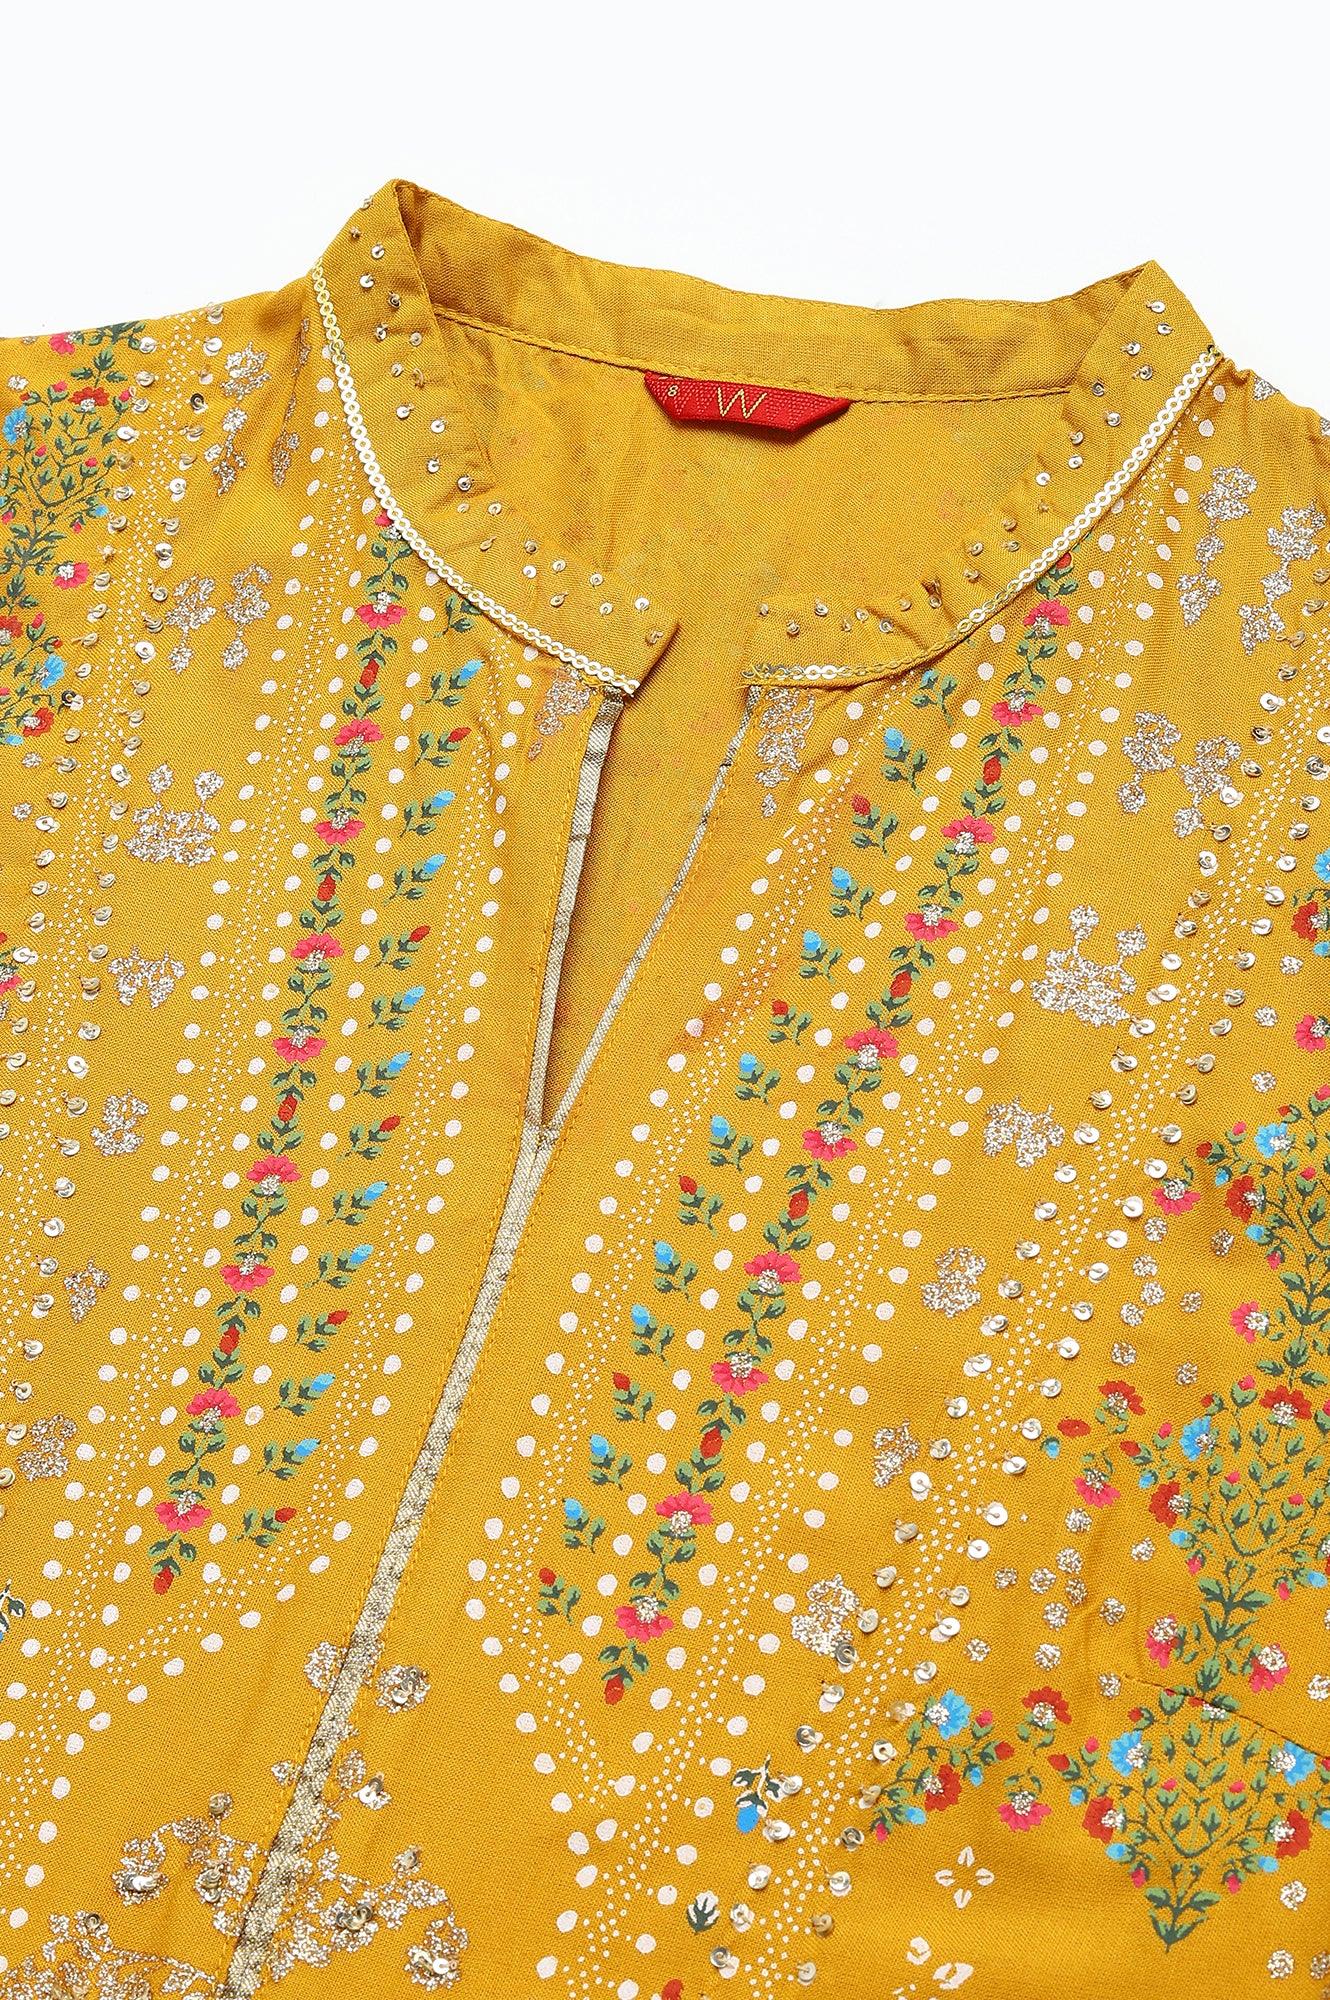 Mustard Yellow Kalidar Printed Dress - wforwoman